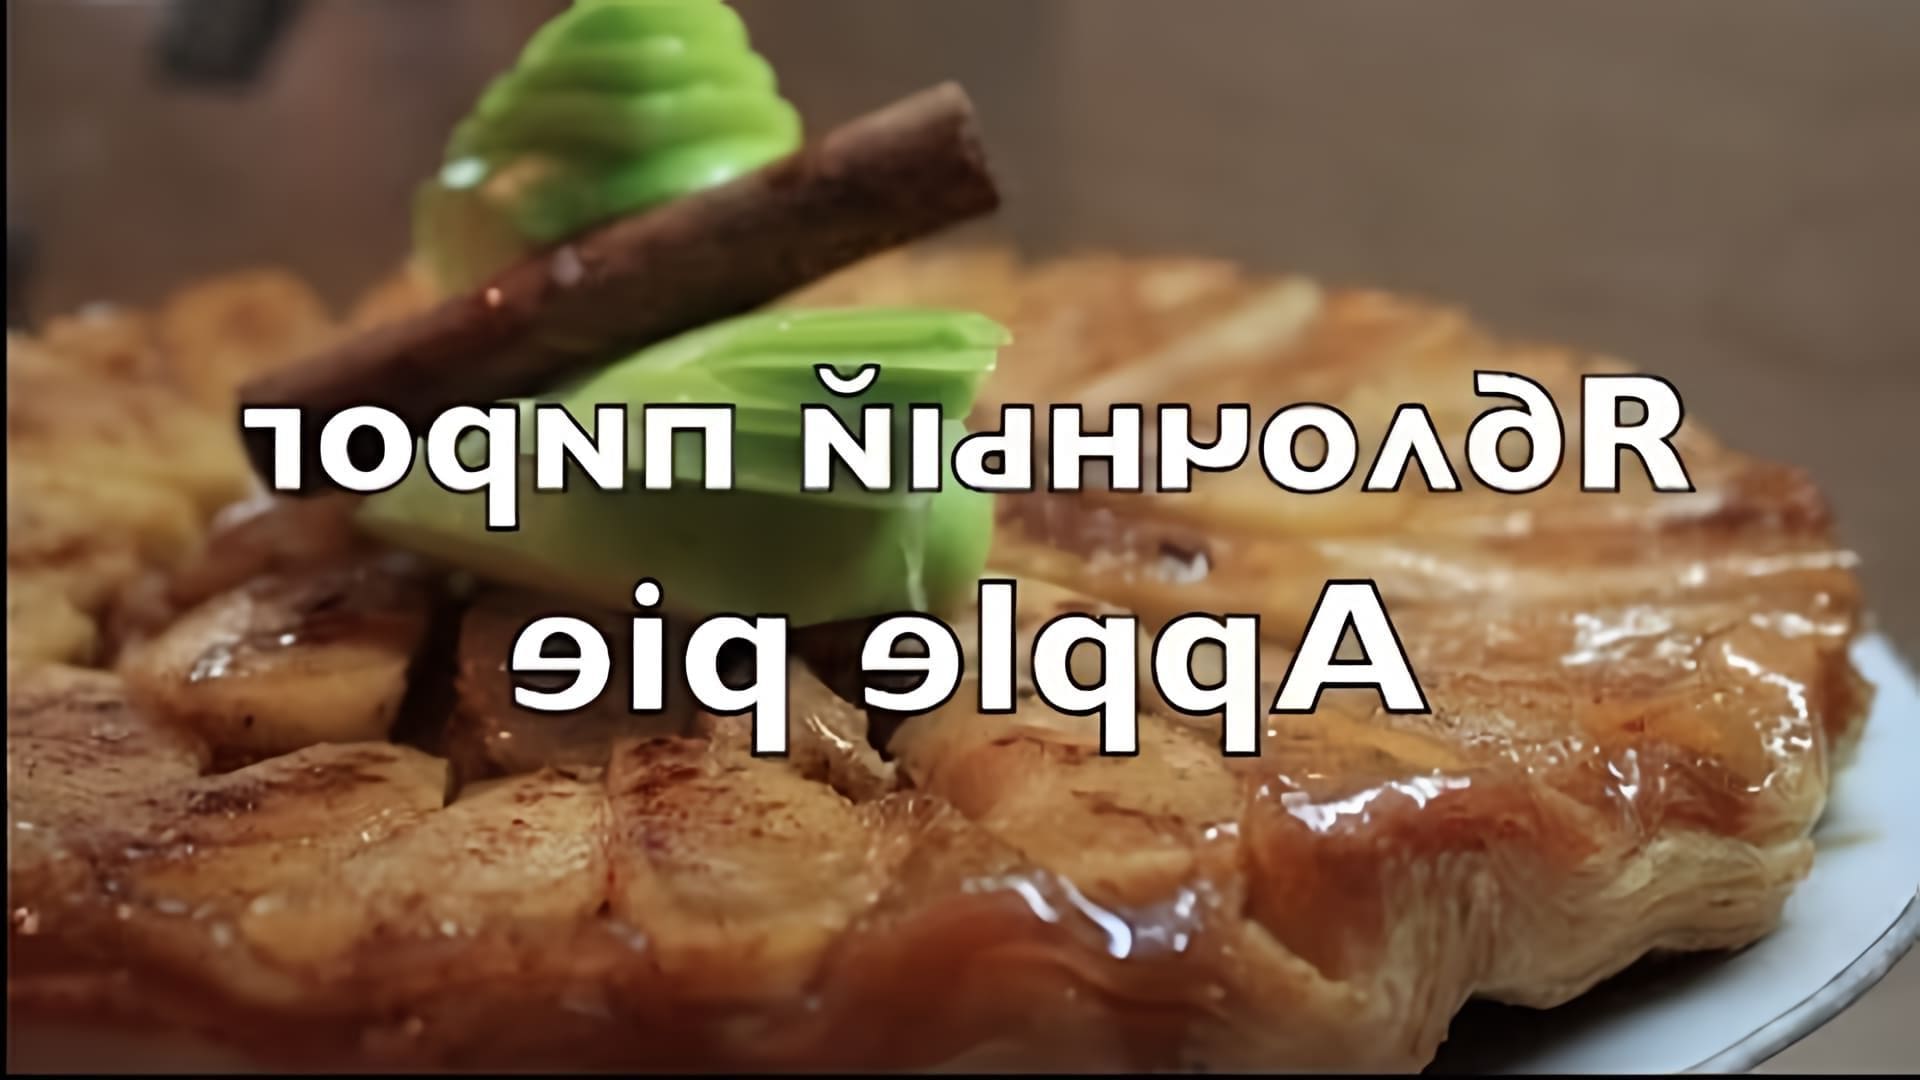 В этом видео-ролике будет представлен простой рецепт яблочного пирога, который отличается от шарлотки